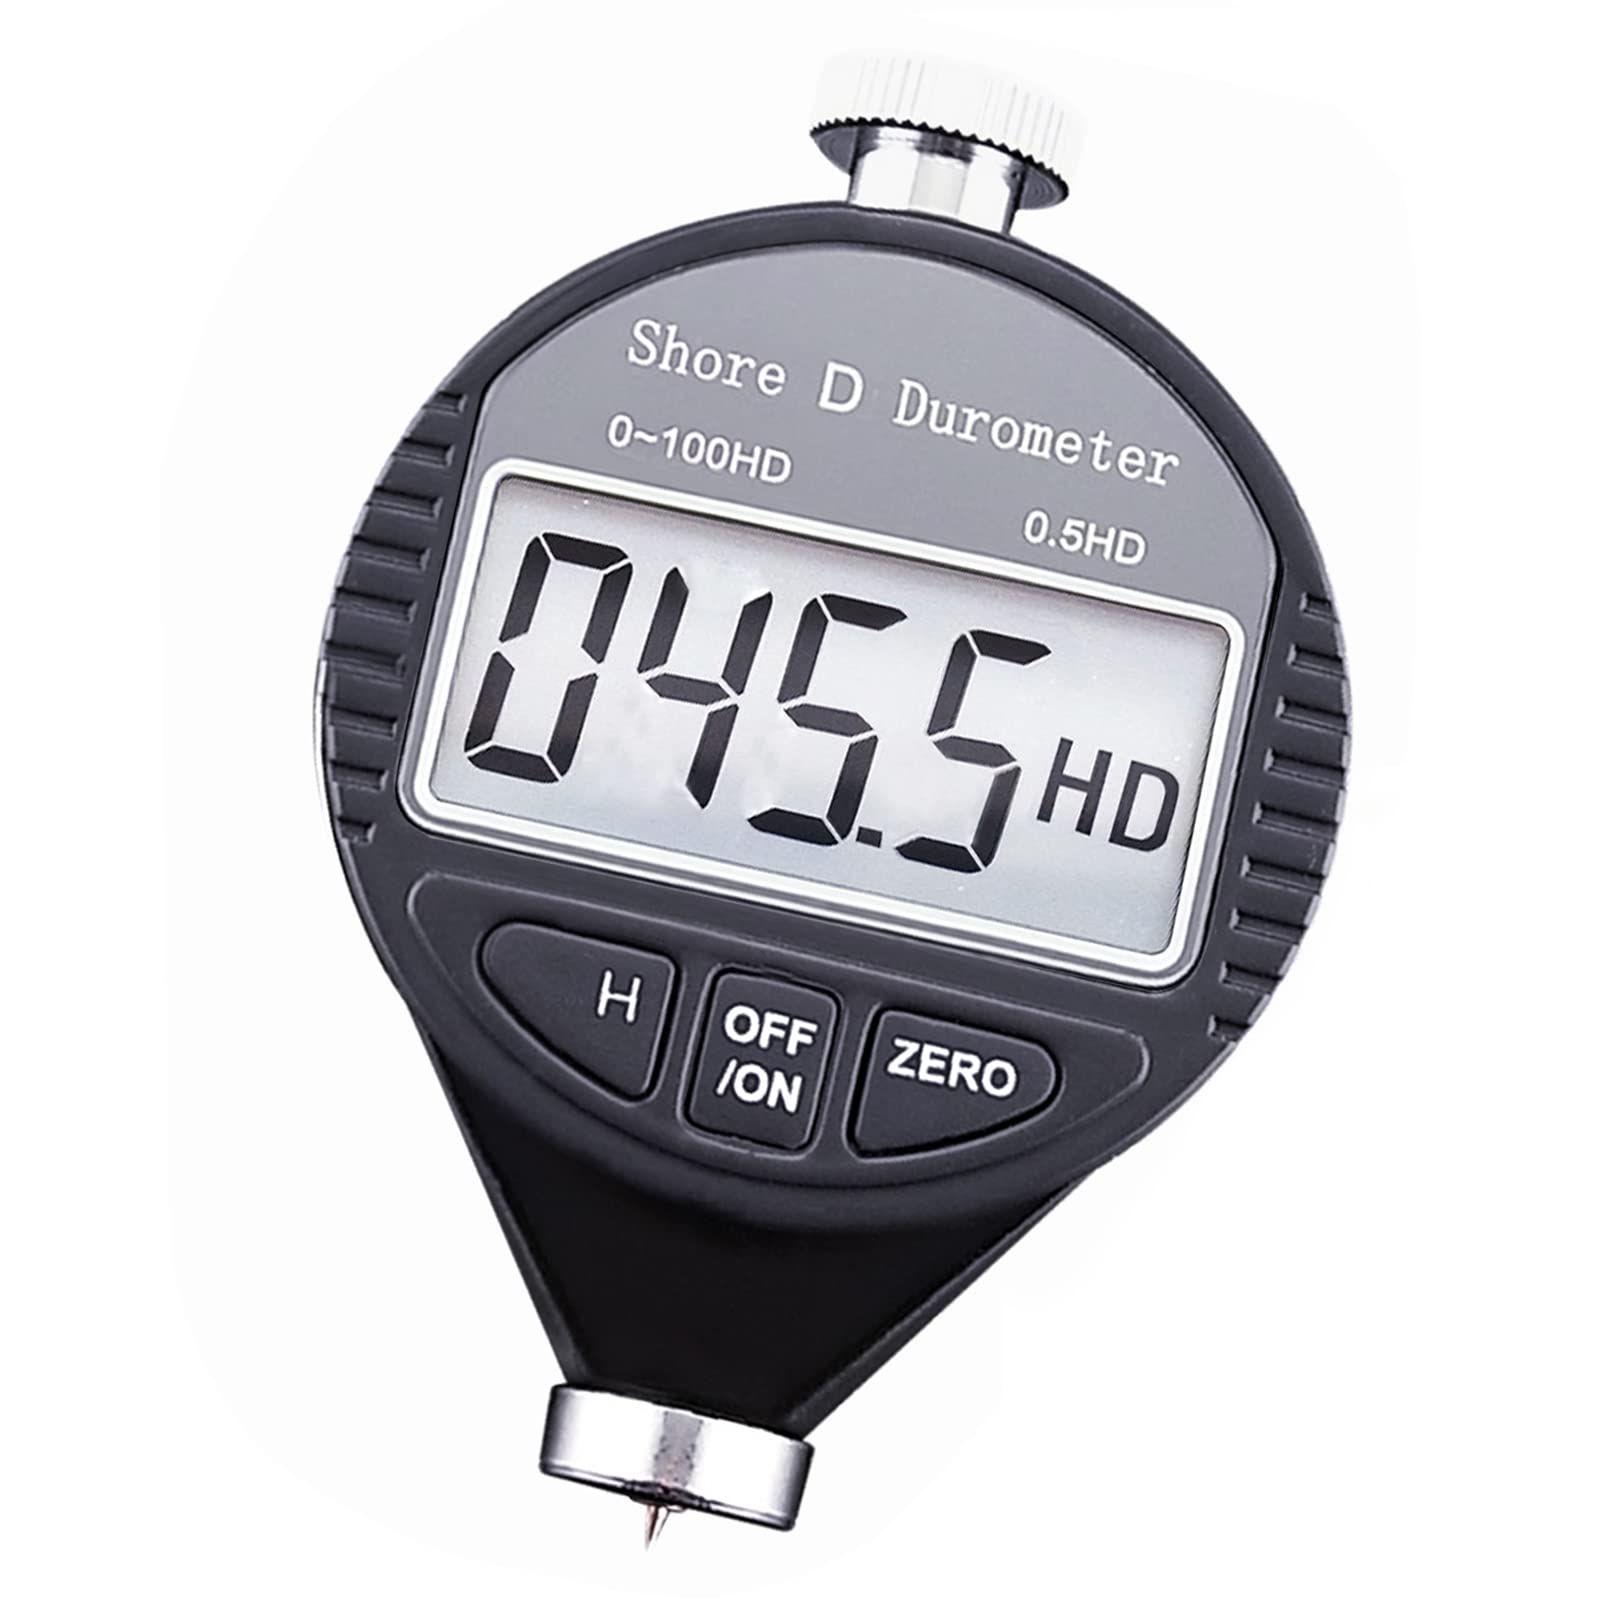 Digitaler 0-100HD Shore D Härte Durometer Maßstab für Gummi, Reifen und Kunststoff (D)